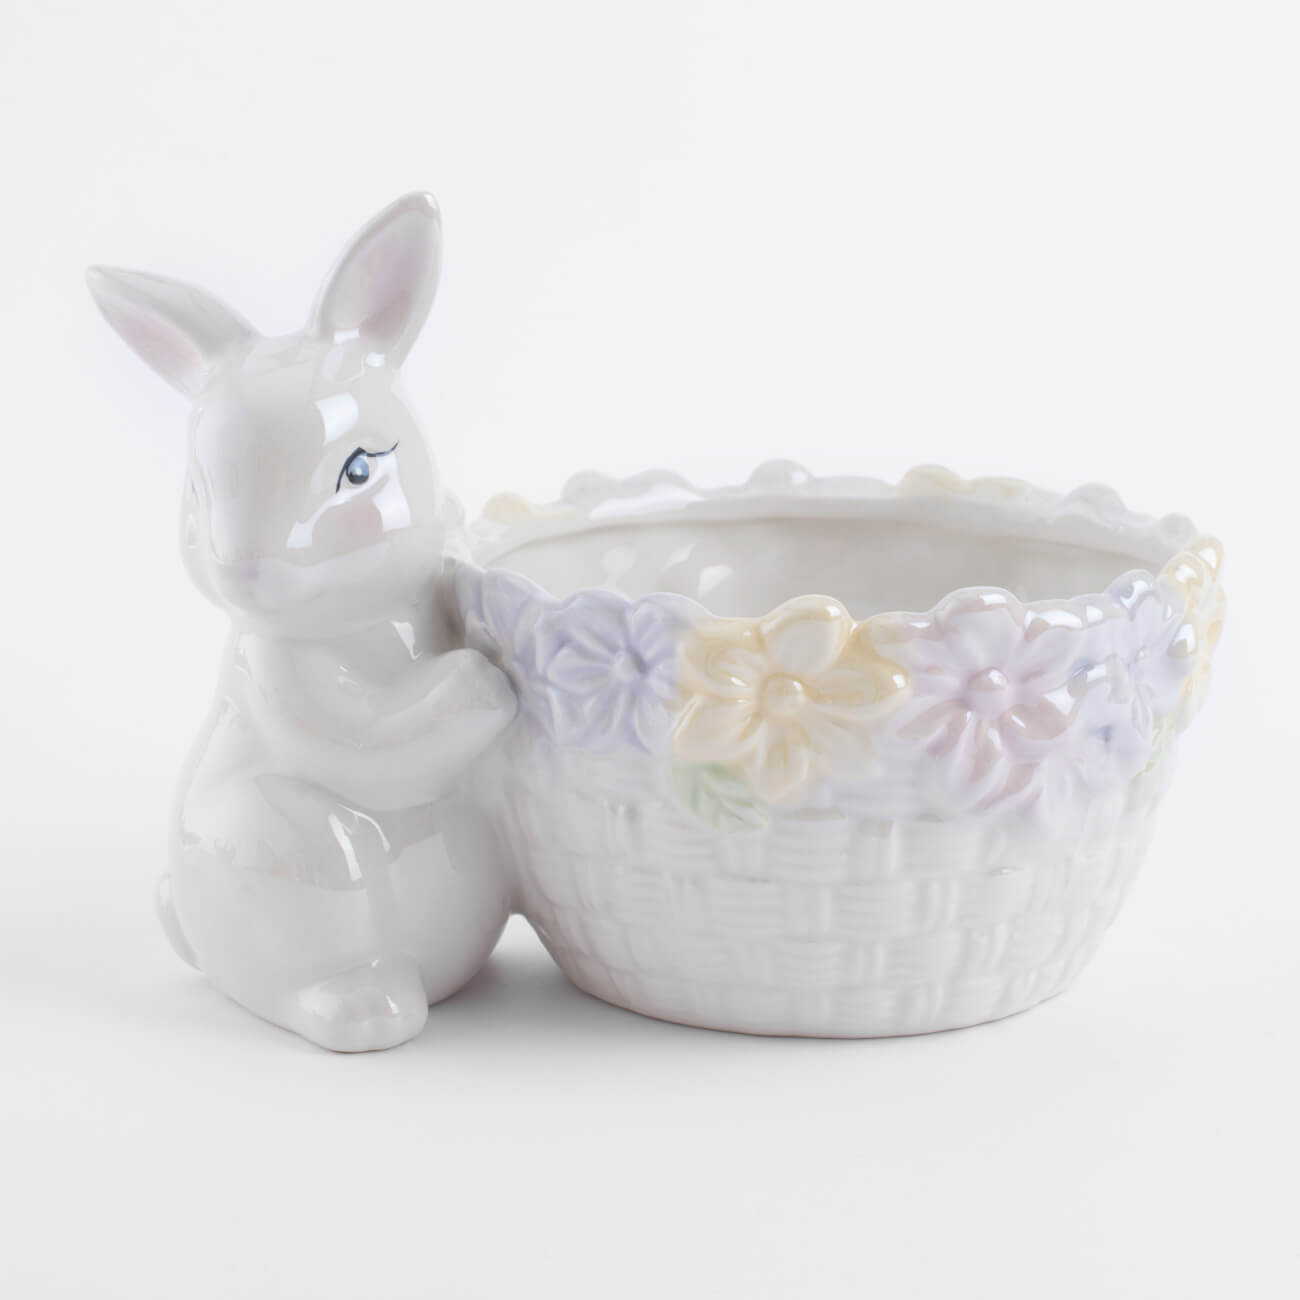 Конфетница, 18x13 см, керамика, перламутр, Кролик с корзиной в цветах, Easter подставка для яйца 8 см керамика перламутр кролик с корзиной в ах easter